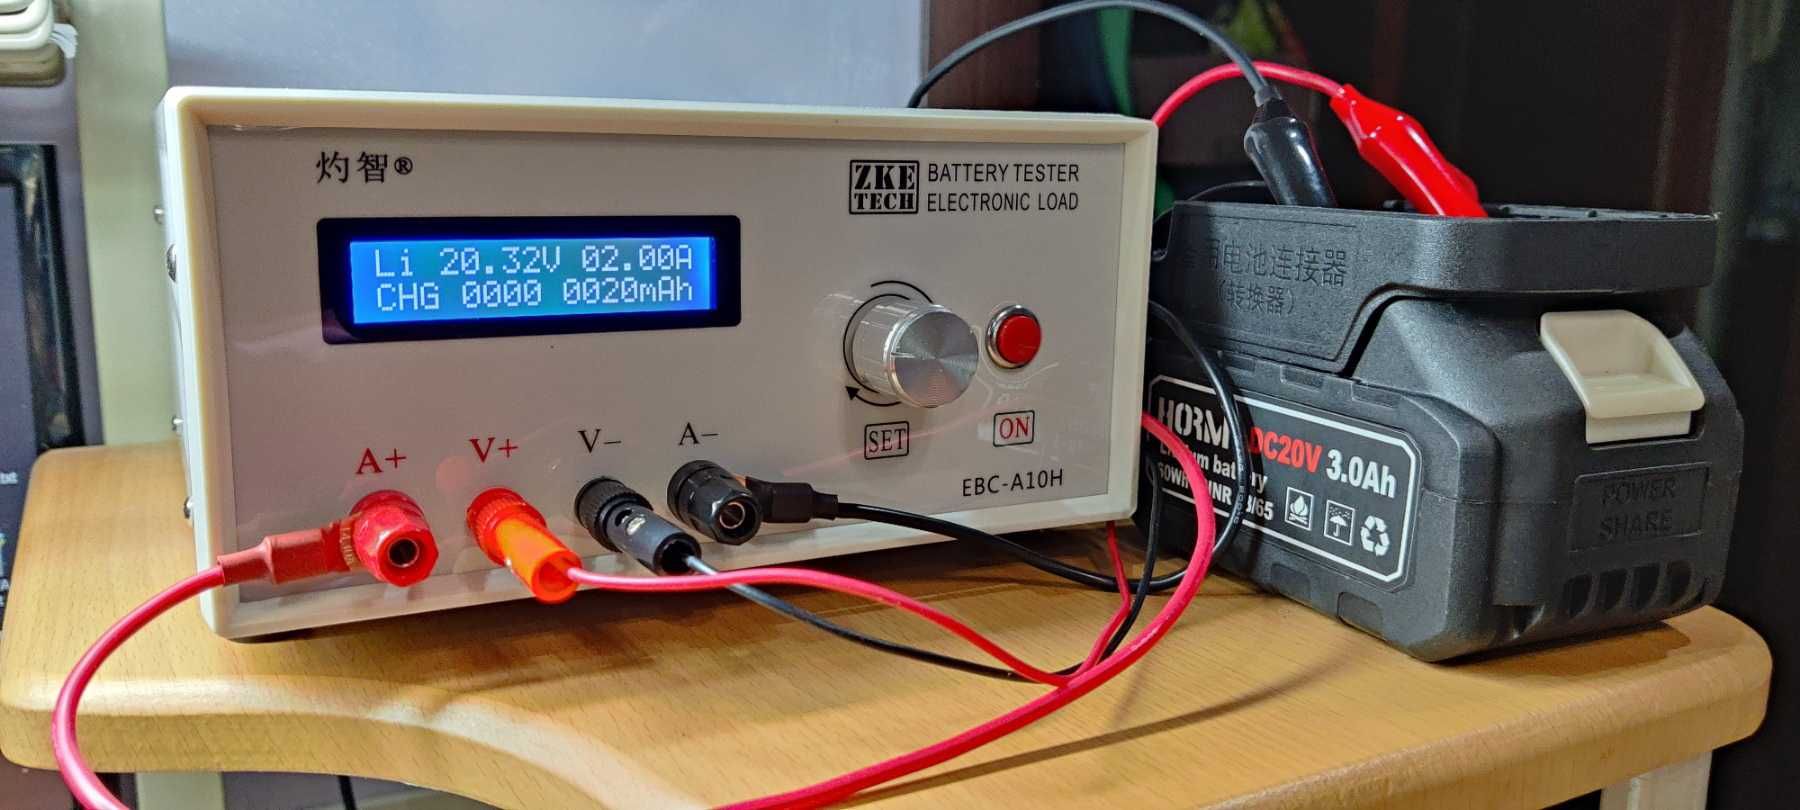 Электронная нагрузка, зарядное тестер ZKETECH EBC-A20,EBD-A20H, -A10H